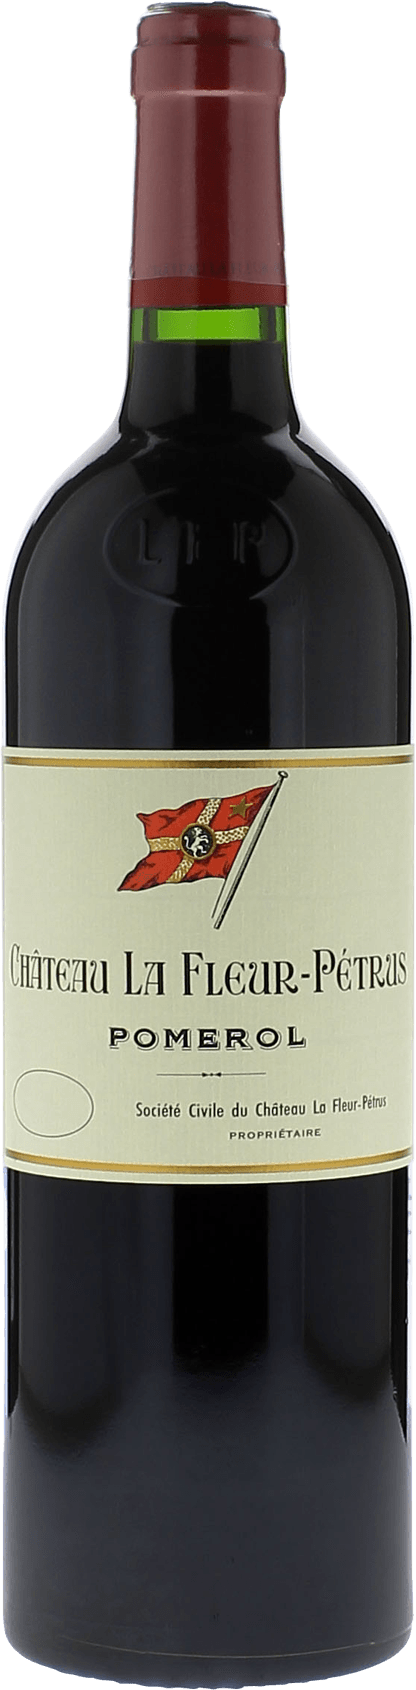 La fleur petrus 1994  Pomerol, Bordeaux rouge